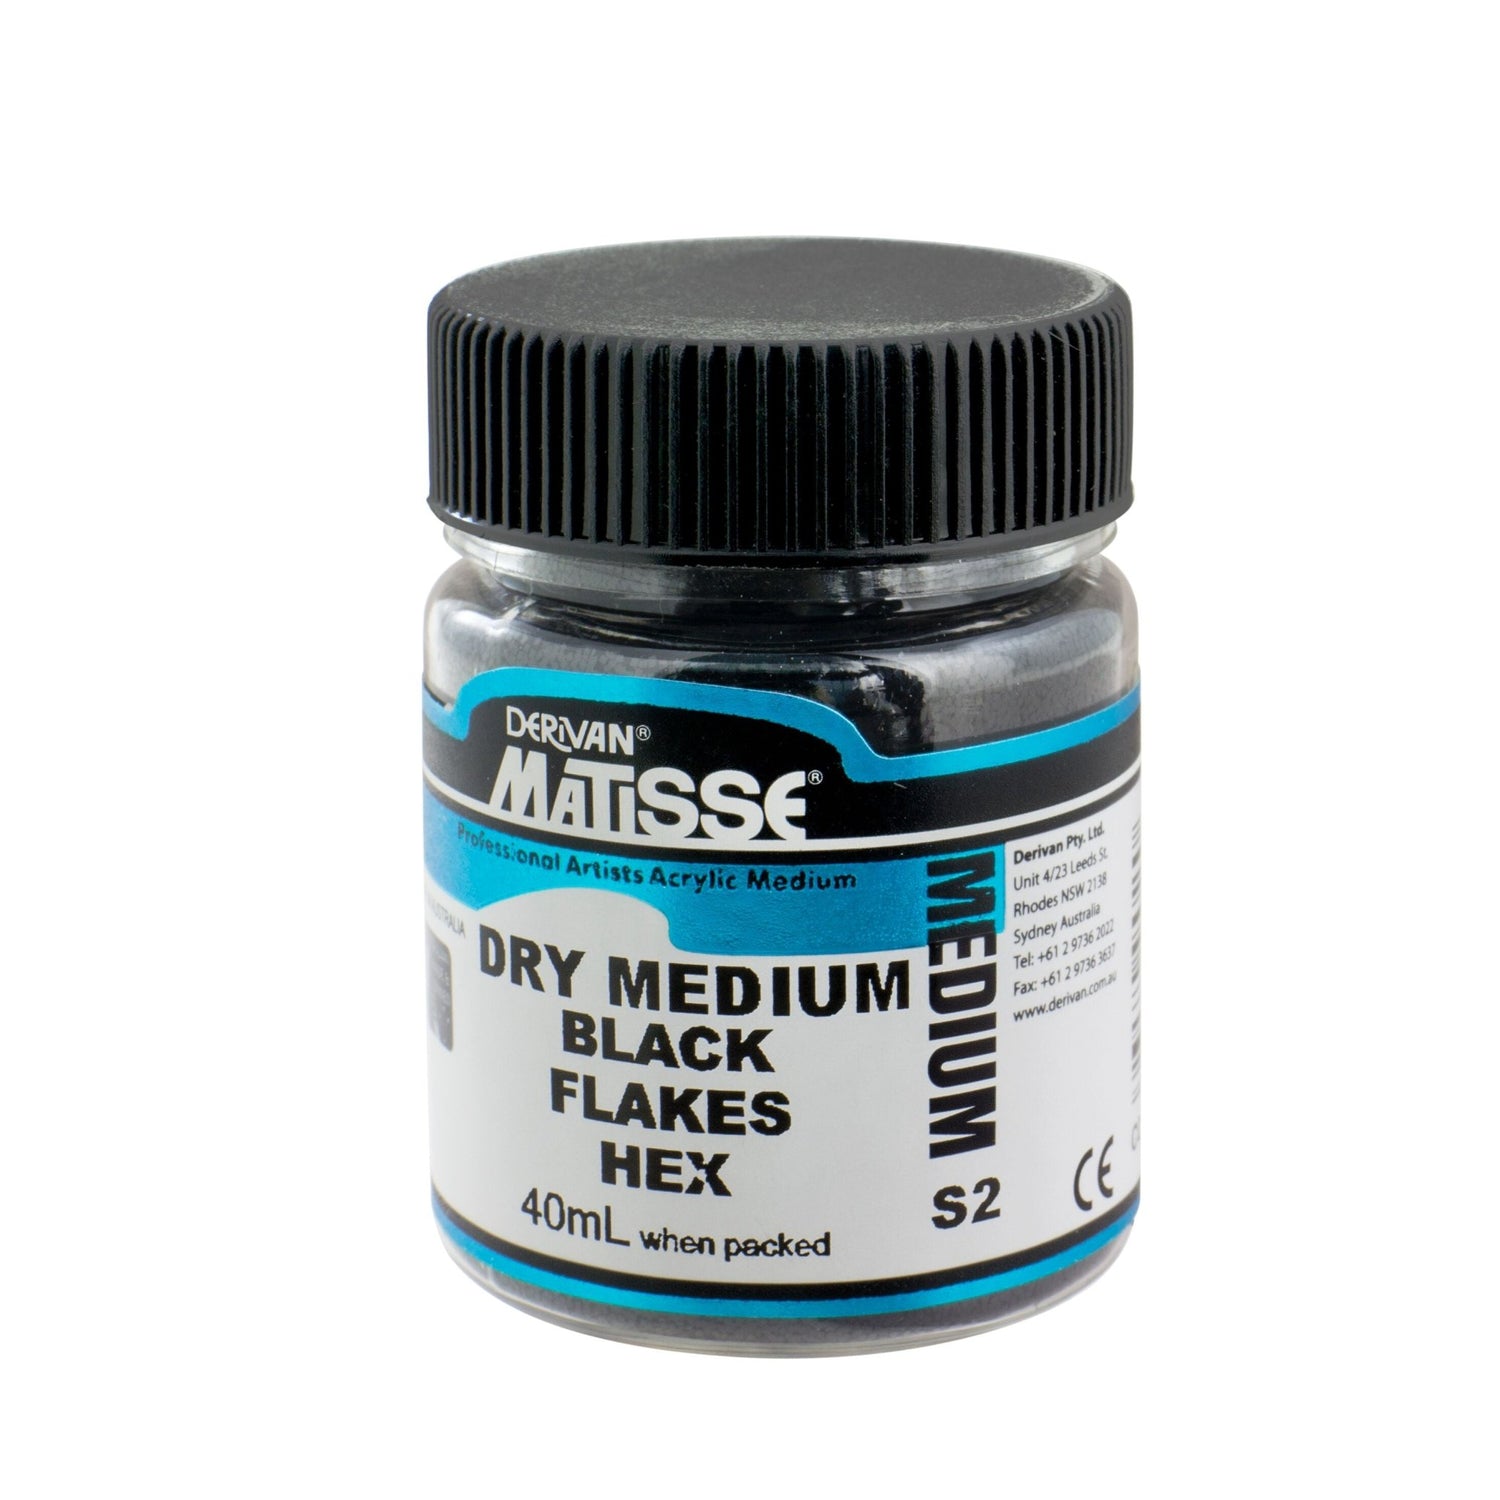 Matisse Dry Medium 40ml Black Flakes - theartshop.com.au